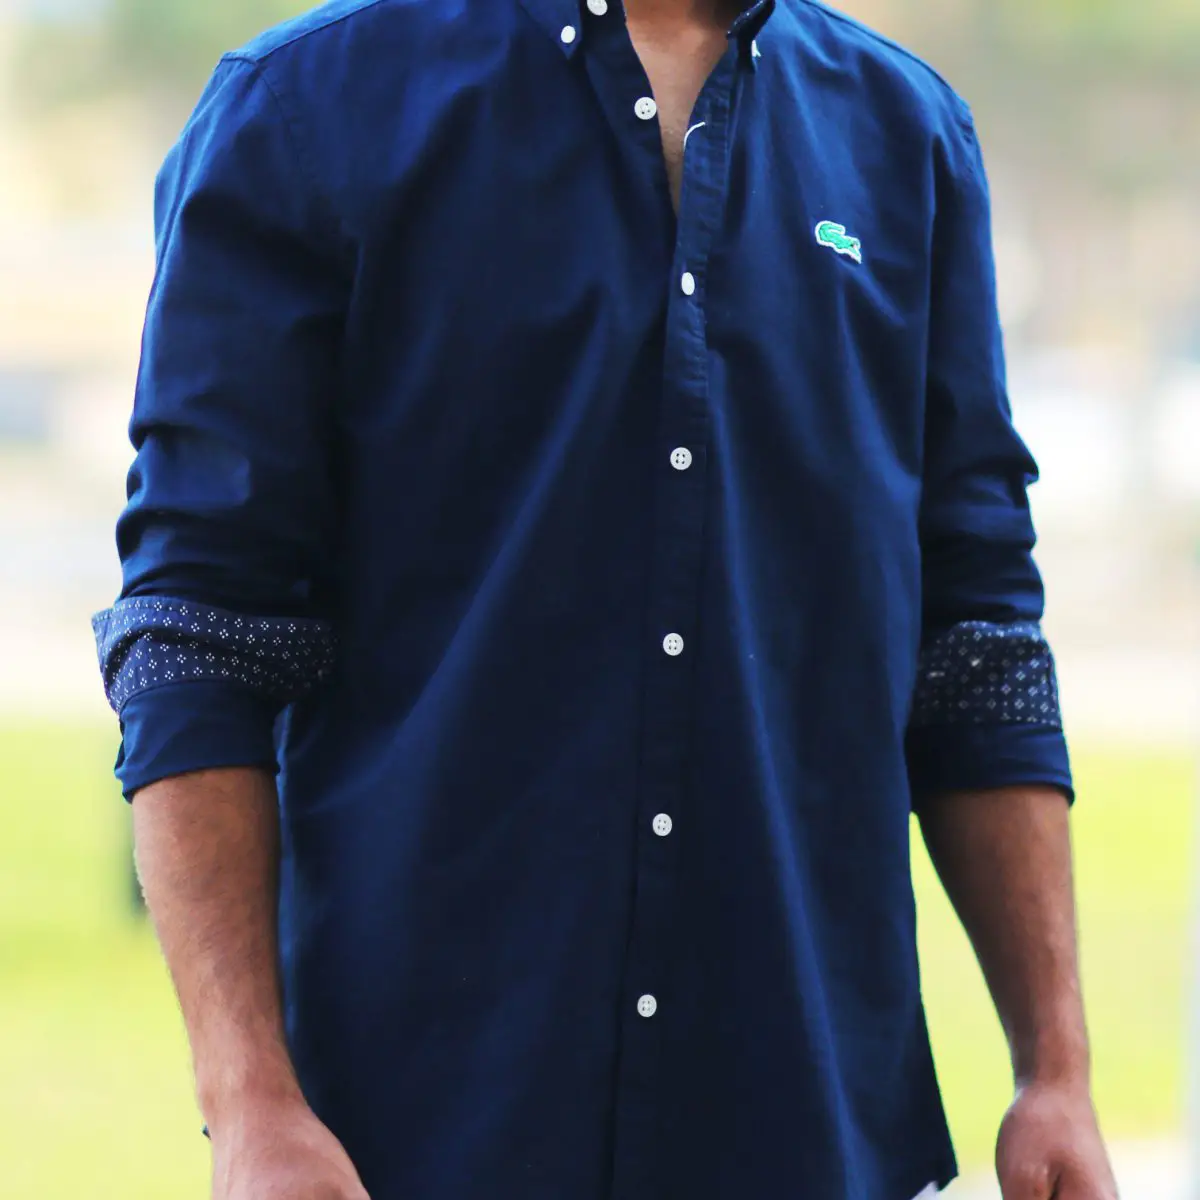 پیراهن مردانه از برند Lacoste مدل Lacoste Shirt shik01